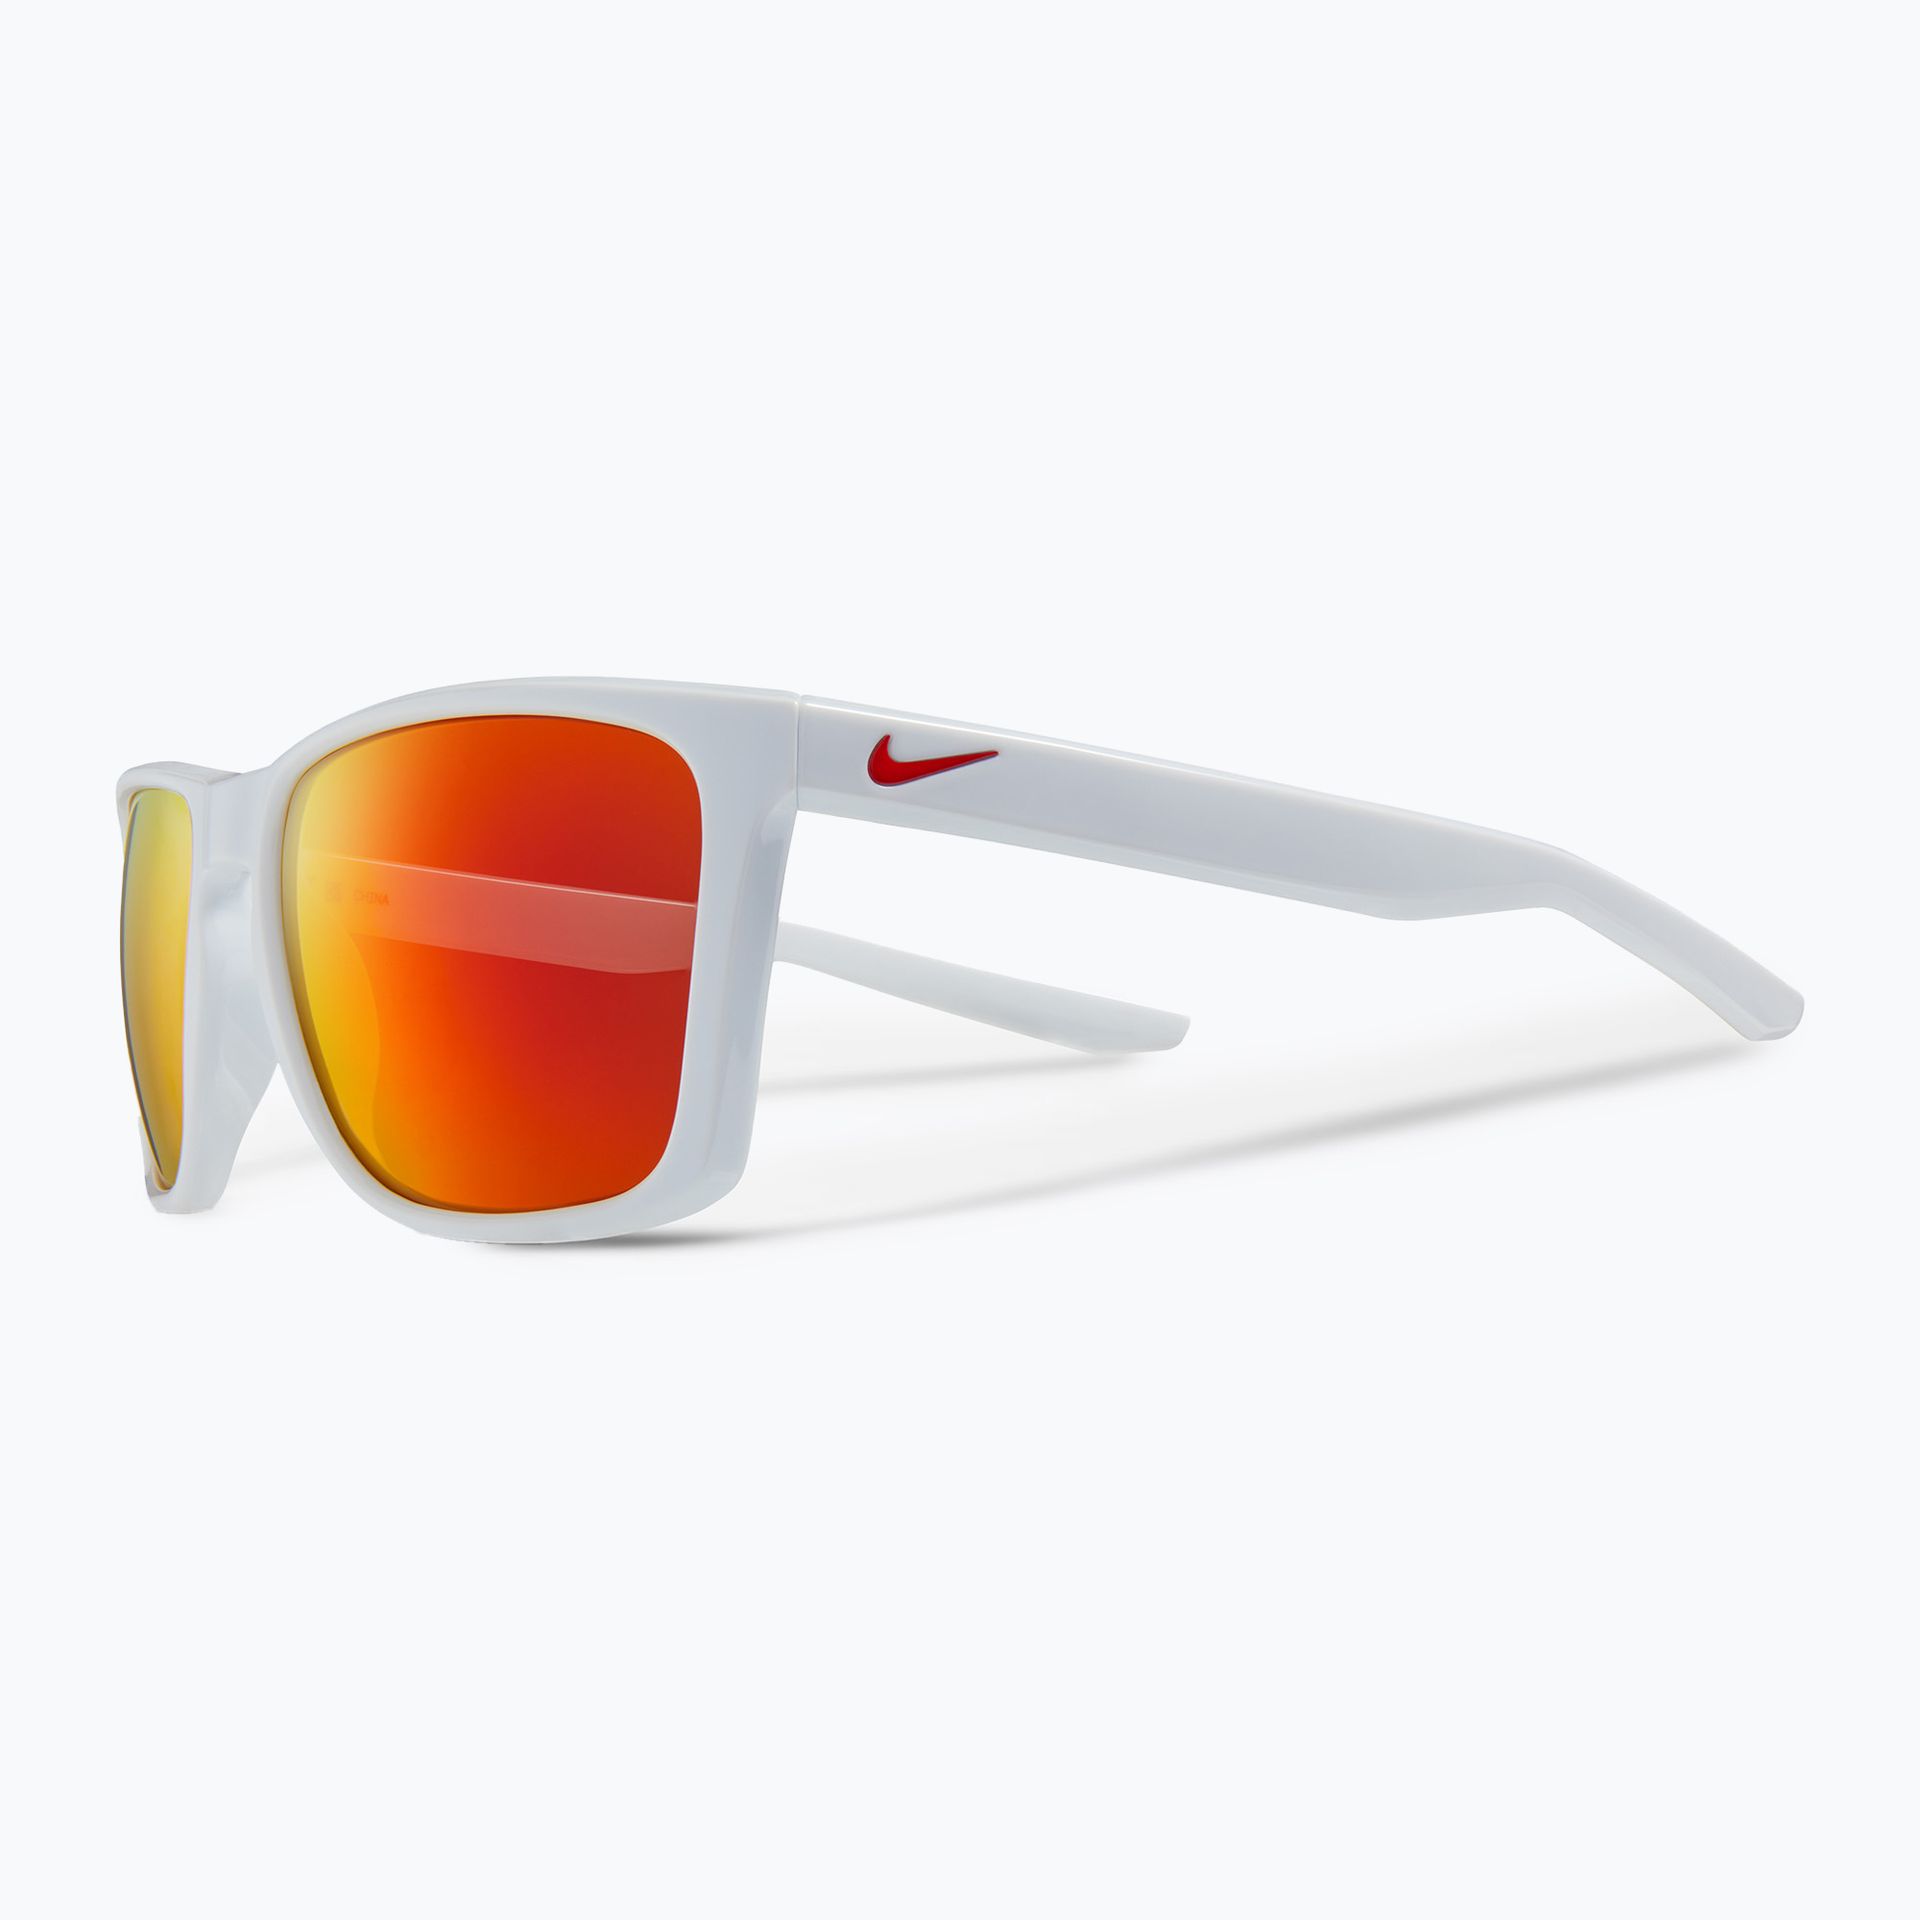 Okulary przeciwsłoneczne Nike Fortune white/red mirror | WYSYŁKA W 24H | 30 DNI NA ZWROT